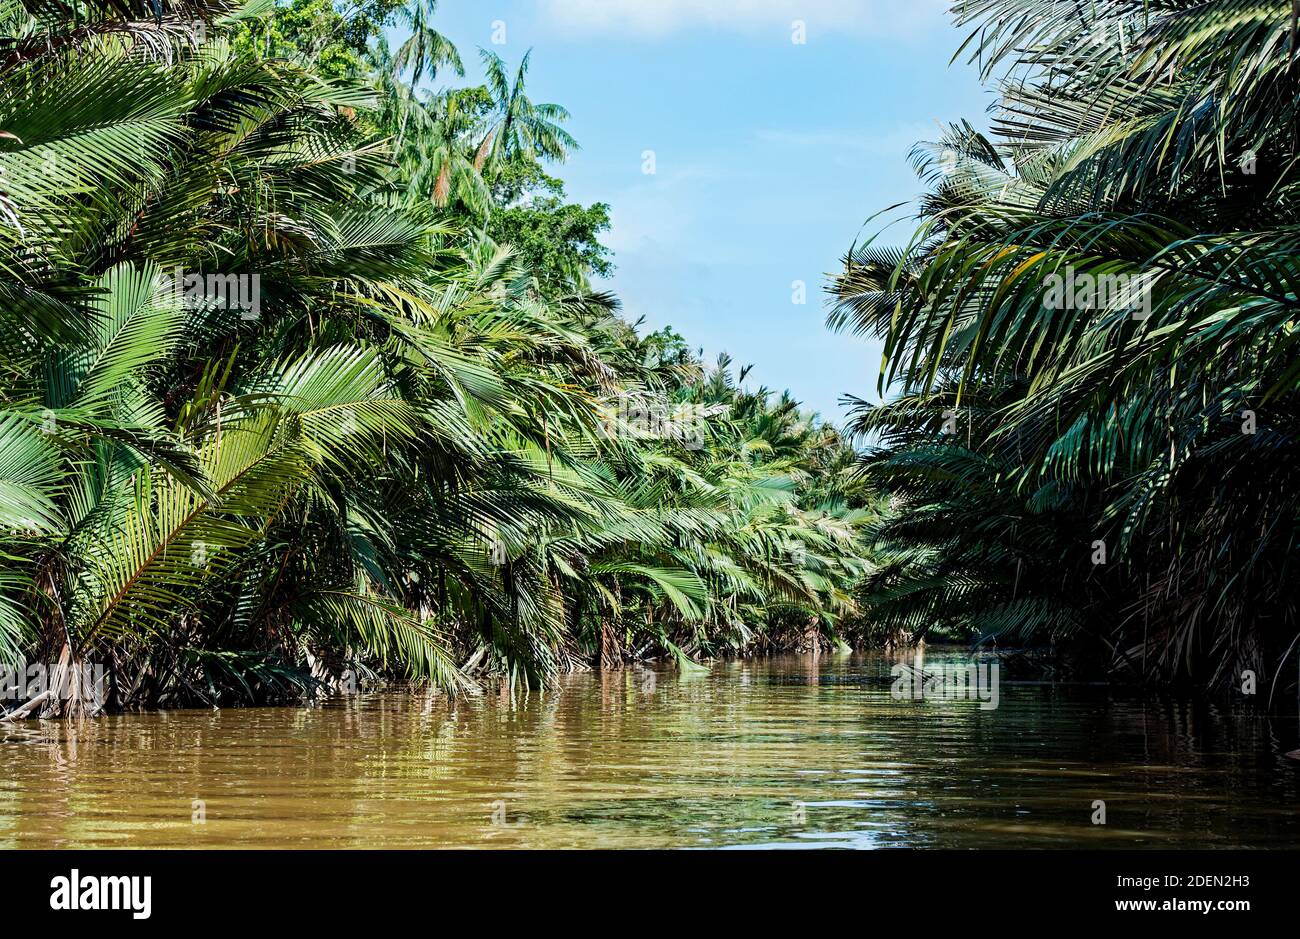 Nipapalmenwald am Flussufer, Kinabatangan Flussebene, Sabah, Bornéo, Malaisie / forêt de palmiers de la nipa riveraine (nypa), plaine inondable de la rivière Kinabatangan, Saba Banque D'Images